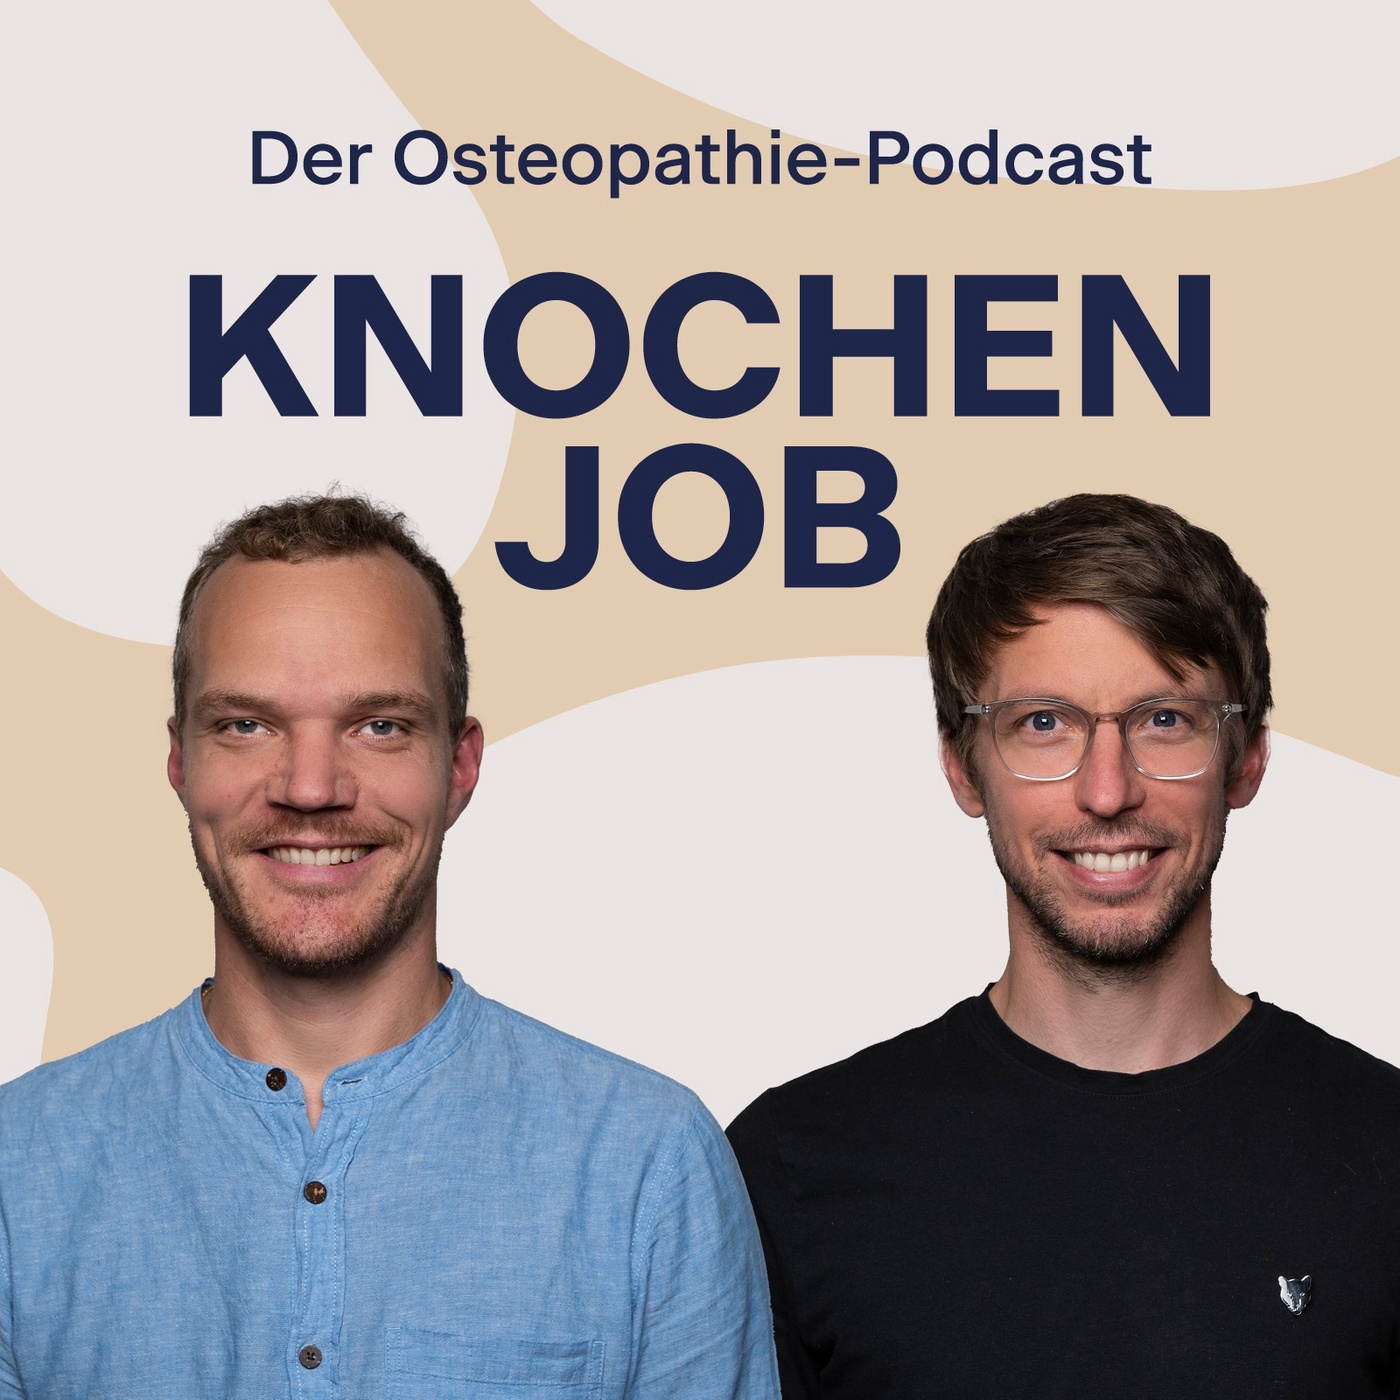 Interview-Spezial mit Jane Eliza Stark: Die vergessenen Techniken der Osteopathie